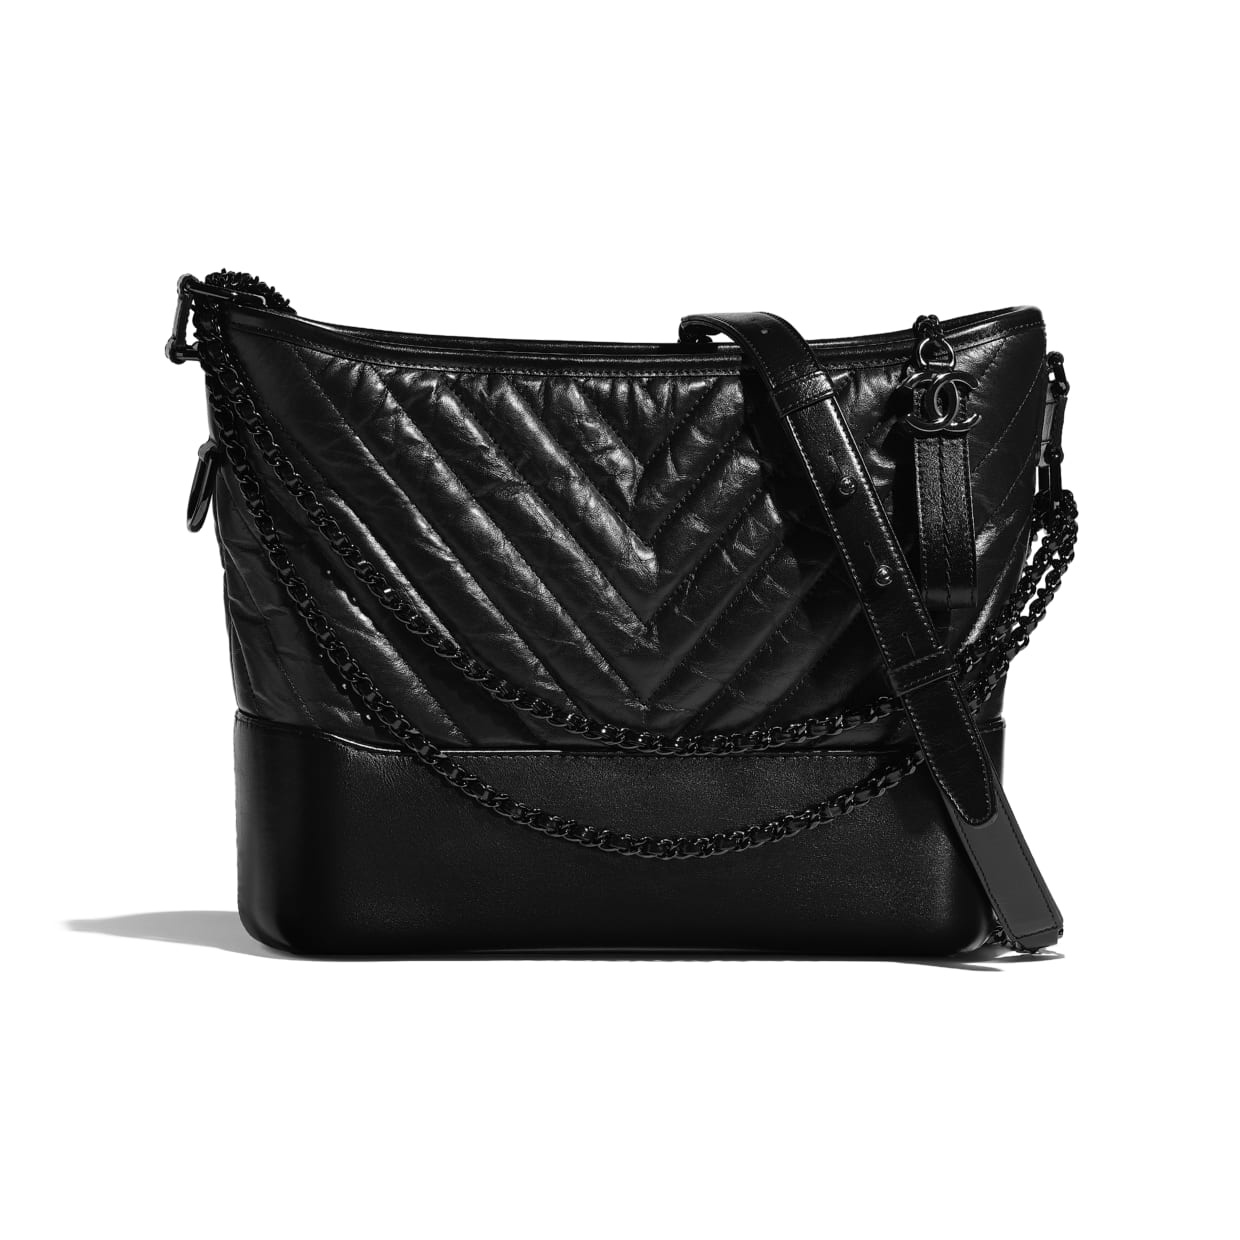 Handbags  SpringSummer 2023 Precollection  Fashion  CHANEL